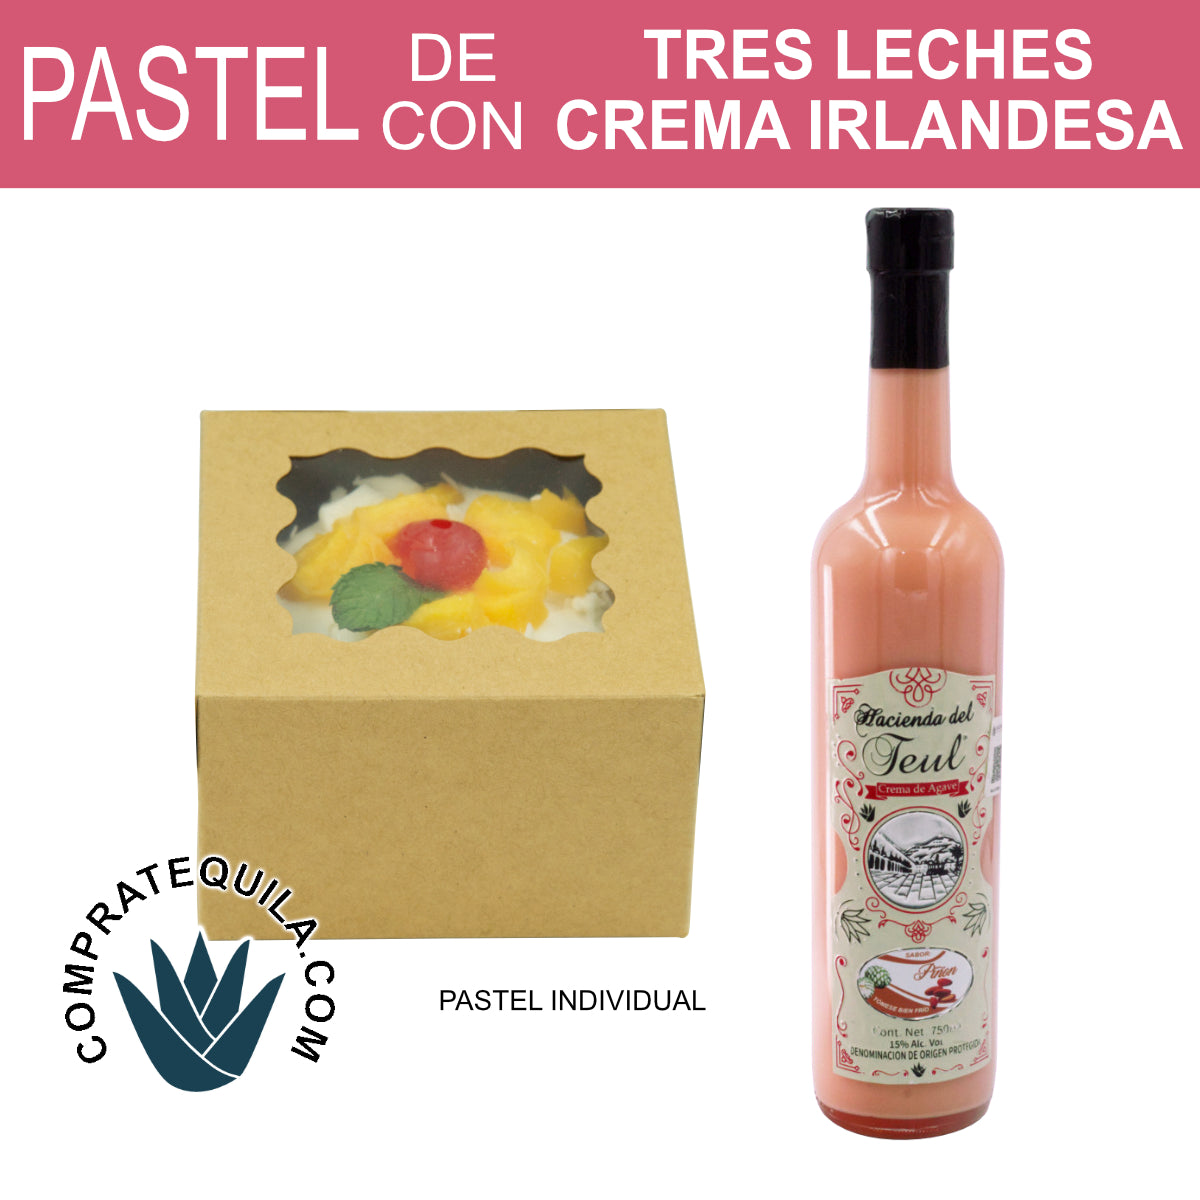 Exquisita Celebración: Pastel Edición Especial Tres Leches con Crema de Agave Mezcal para el Día de la Madre